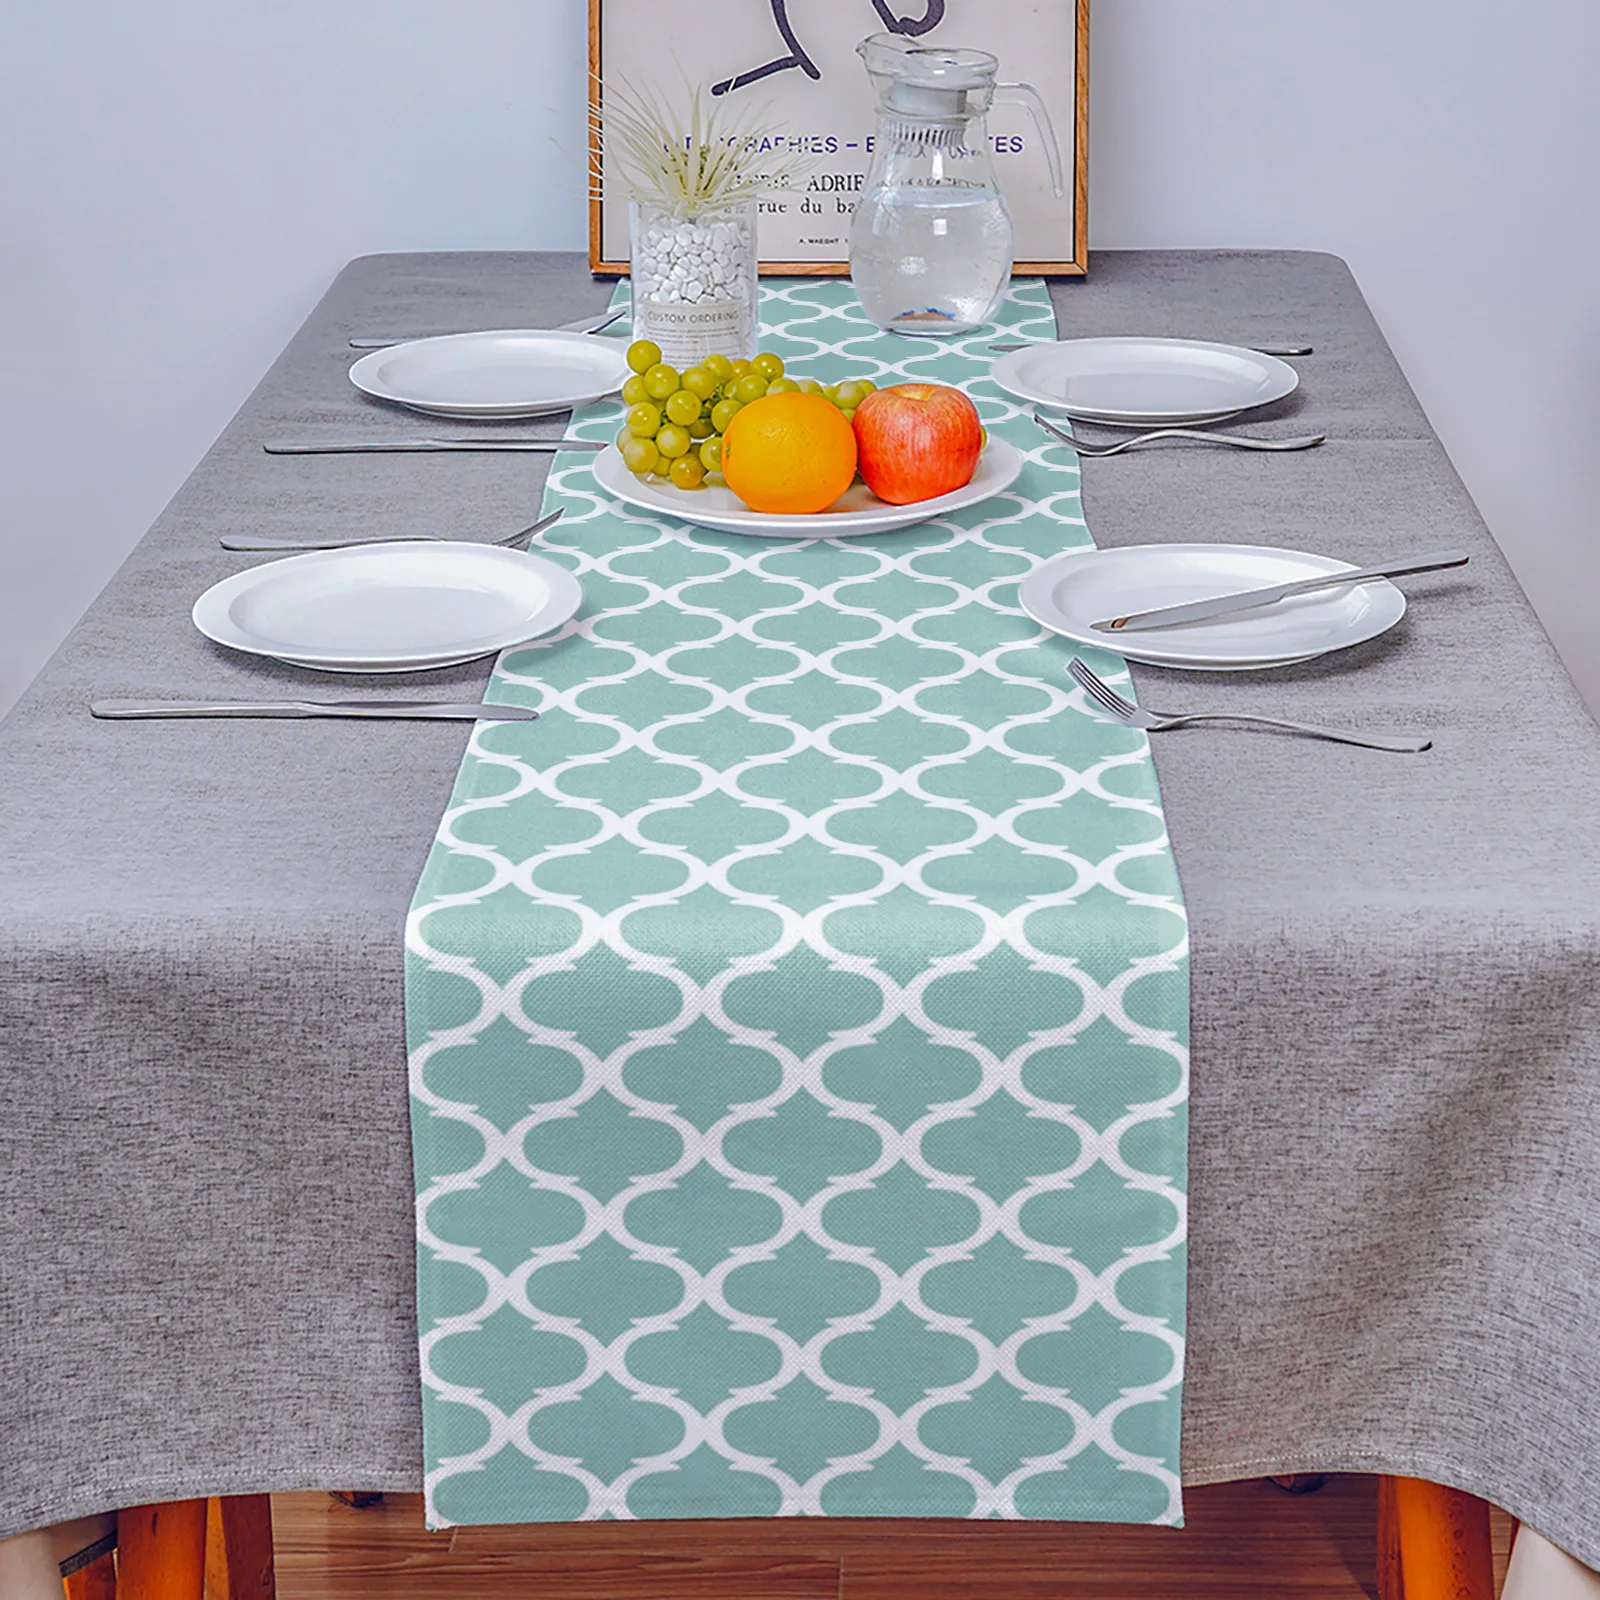 Maroko tyrkysová přehoz jídelní stůl runner svatební dekorace anti-stain obdélníkové stůl runner pro jídelní stůl dzieckiem dekorace